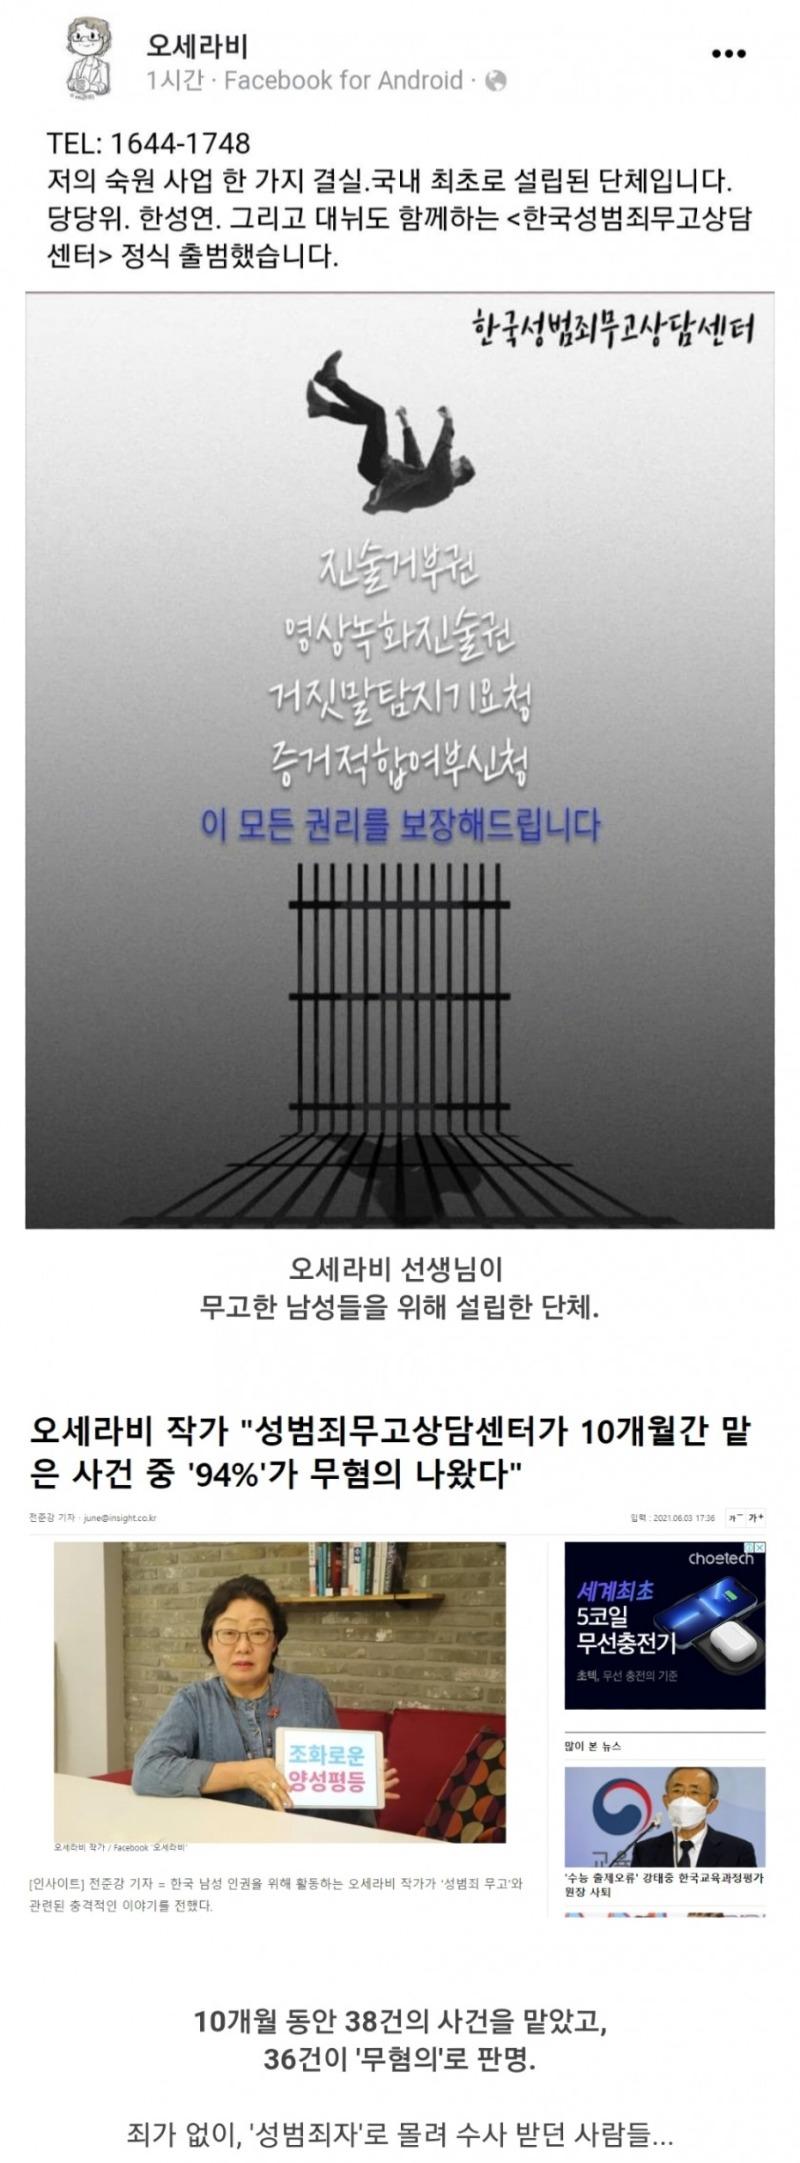 韓国性犯罪誣告相談センターの近況